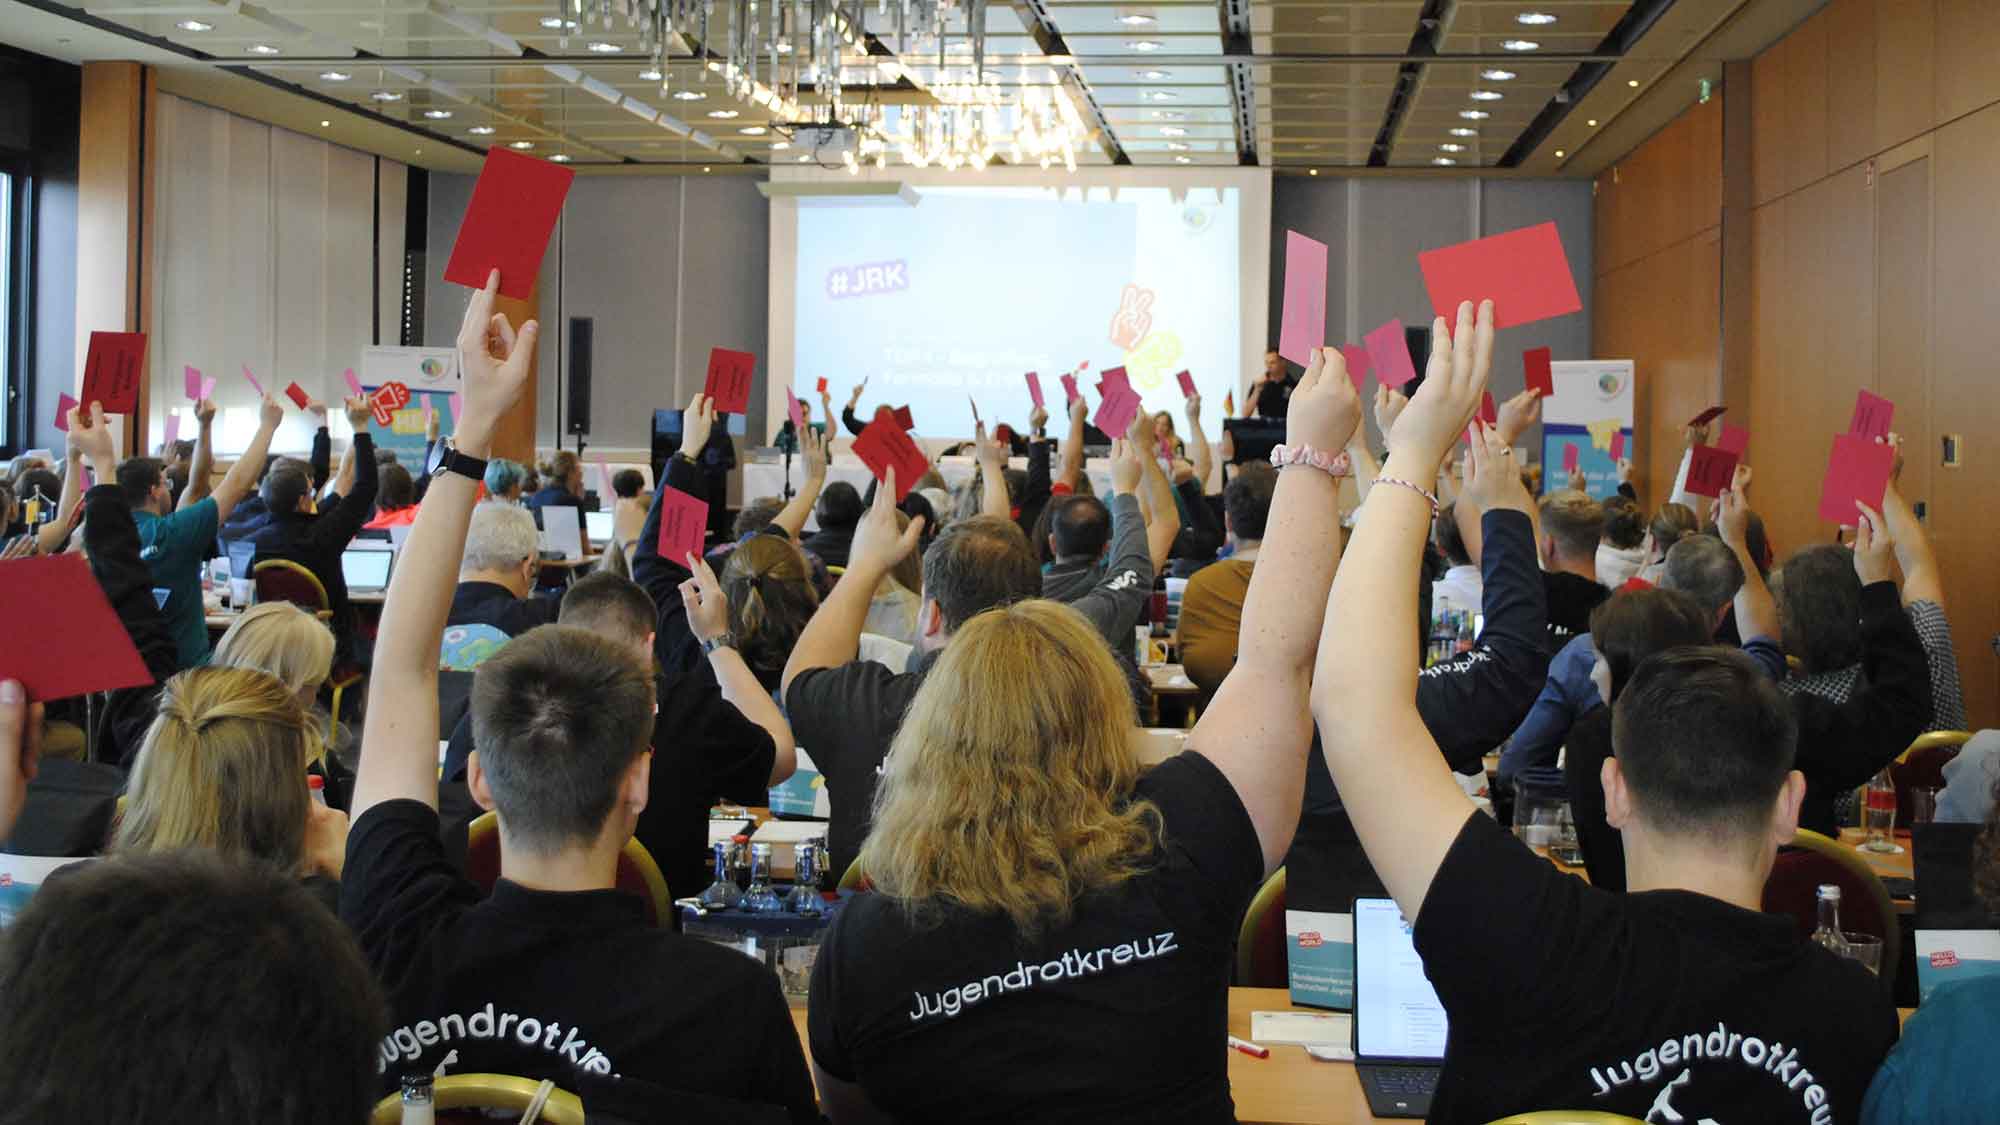 Bundeskonferenz des Deutschen Jugendrotkreuzes (JRK): Gesellschaft zeigt ihre Stärke im Miteinander